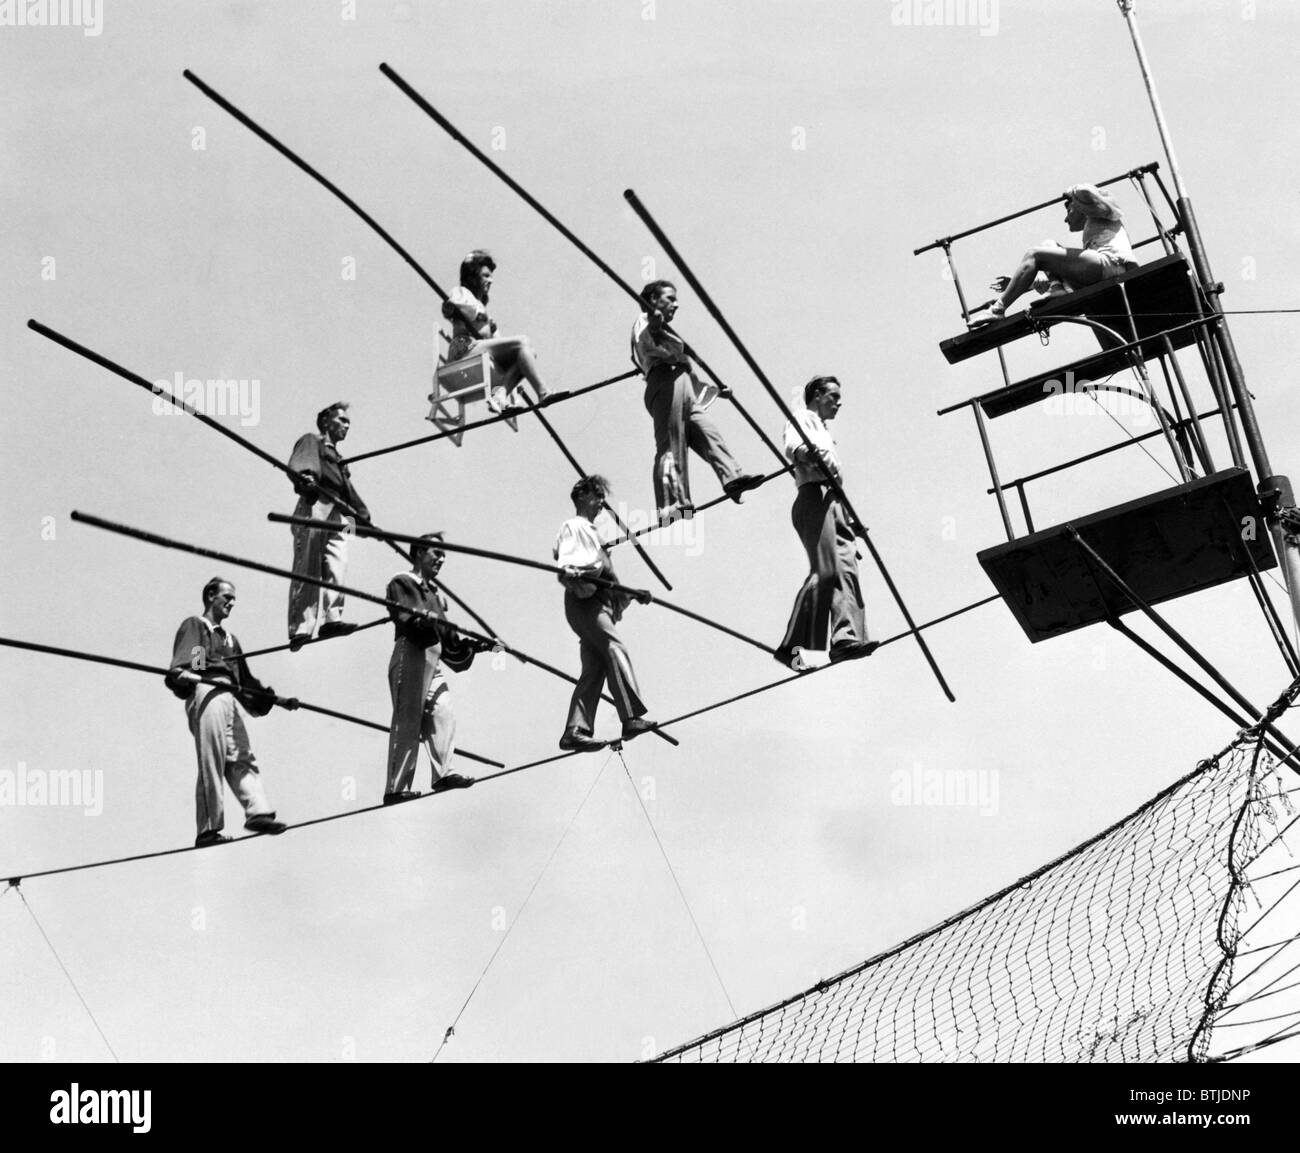 El Flying Wallendas, un acto del circo conocido por realizar acrobacias sin redes de seguridad, practicando su acto, 1947. Foto de stock